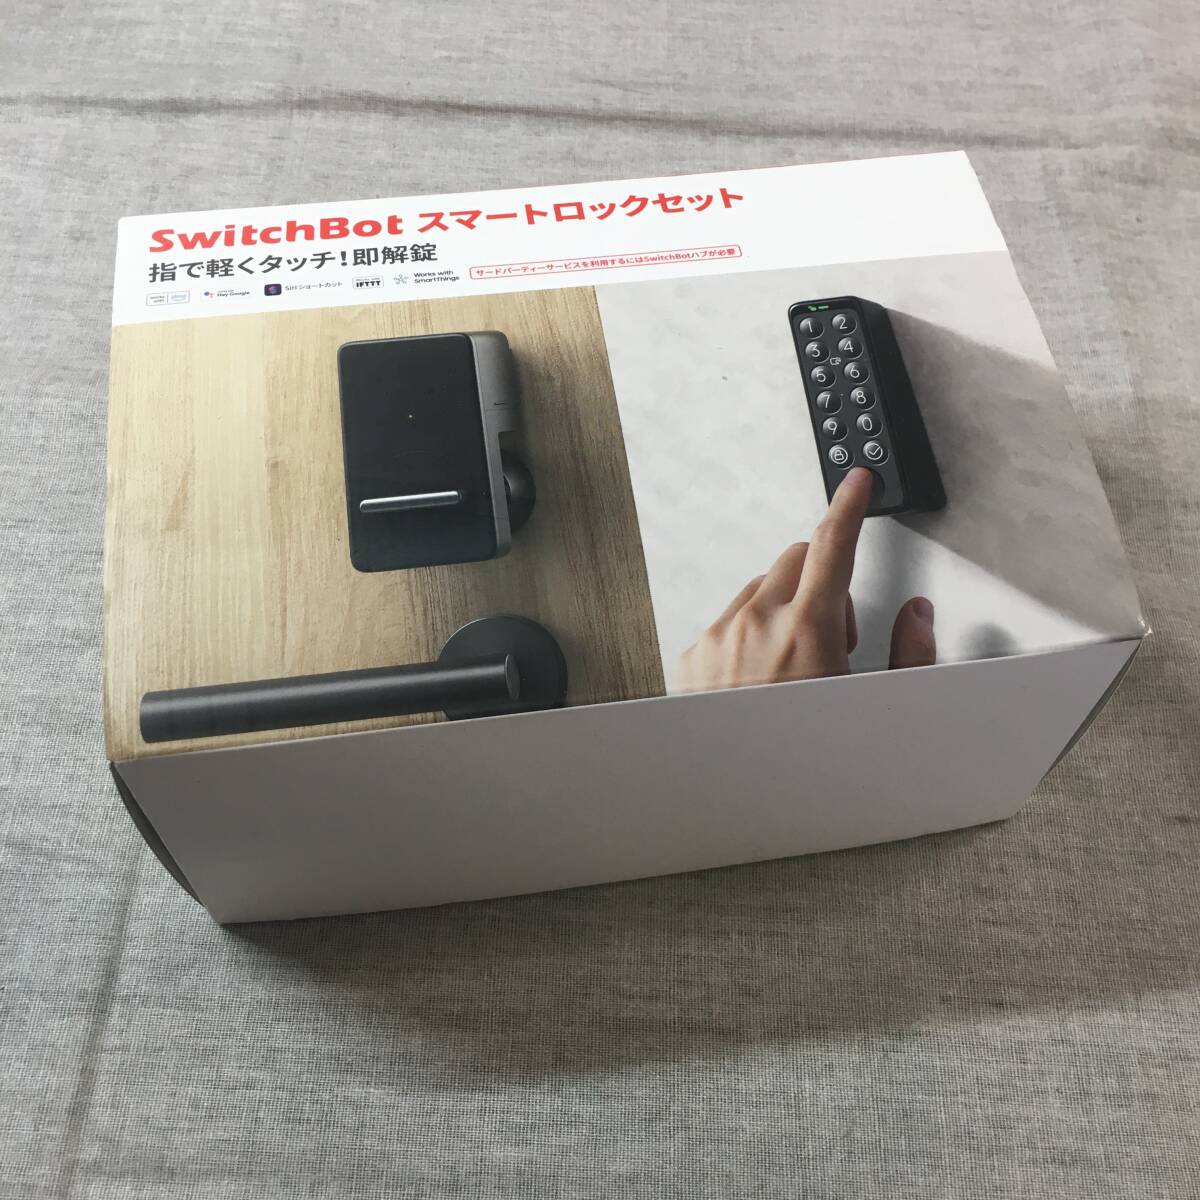 未使用 SwitchBot スマートロック 指紋認証パッド セット Alexa スマートホーム スイッチボット オートロック 暗証番号 玄関 W1601702